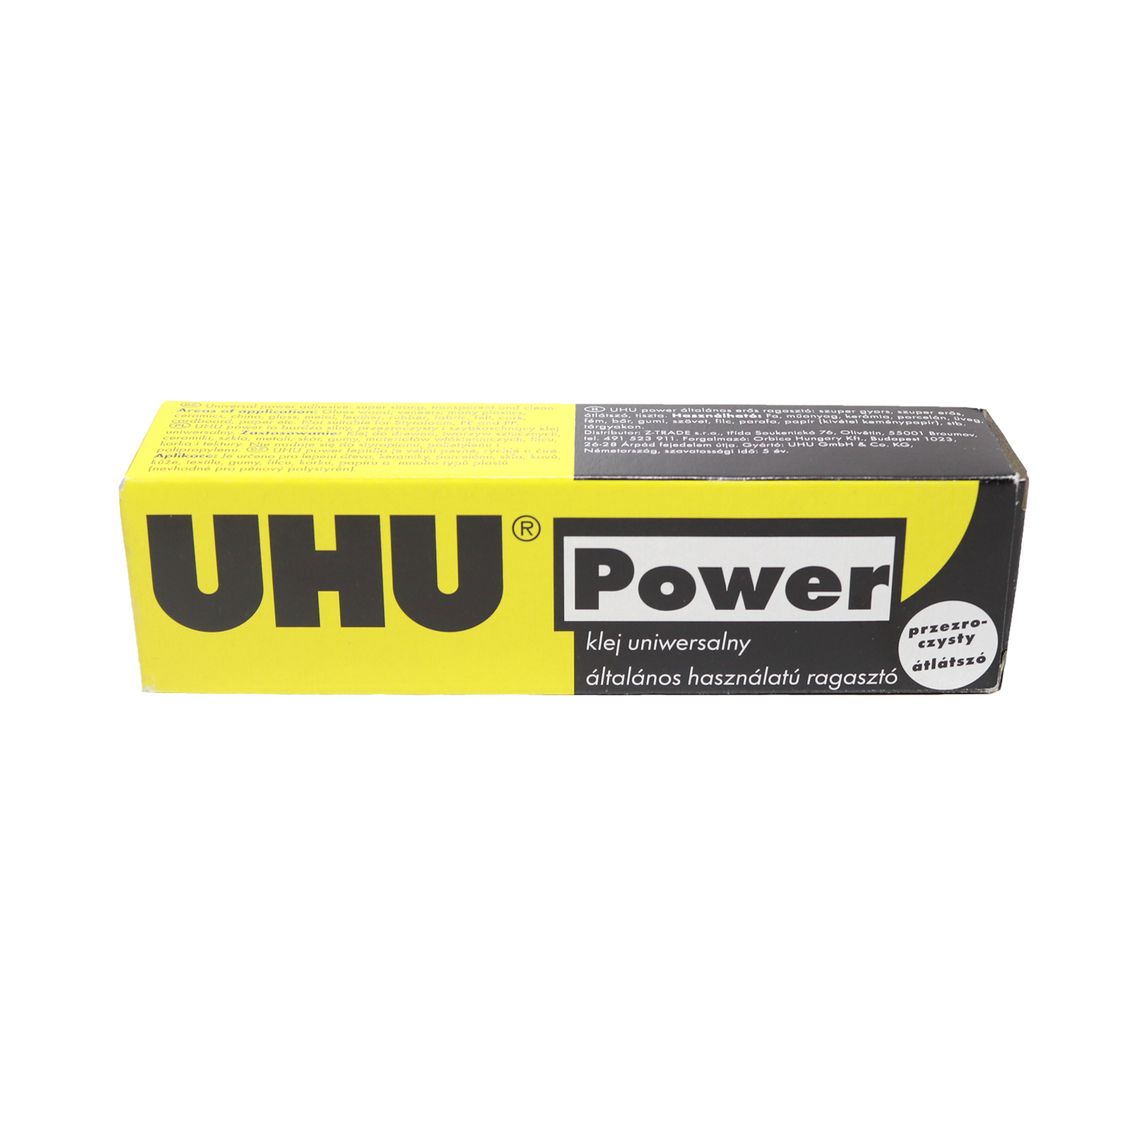 Клей UHU POWER универсальный 45 мл. арт. 40328 (уп. 1 шт.)